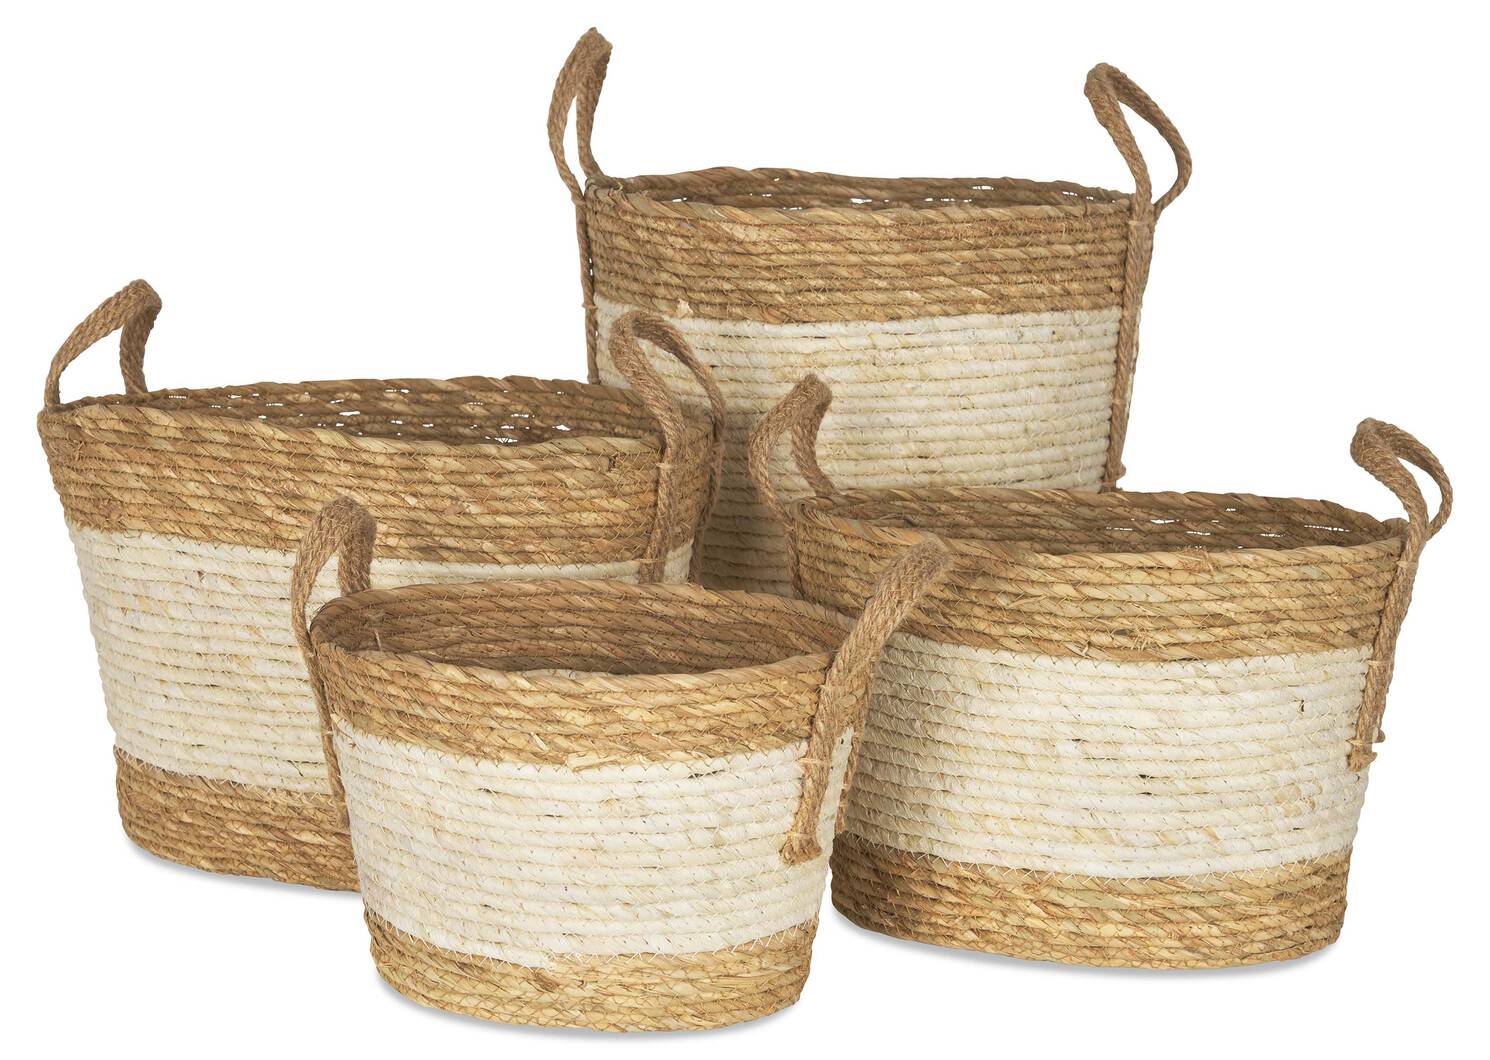 Zelie Basket Medium Natural/Ivory